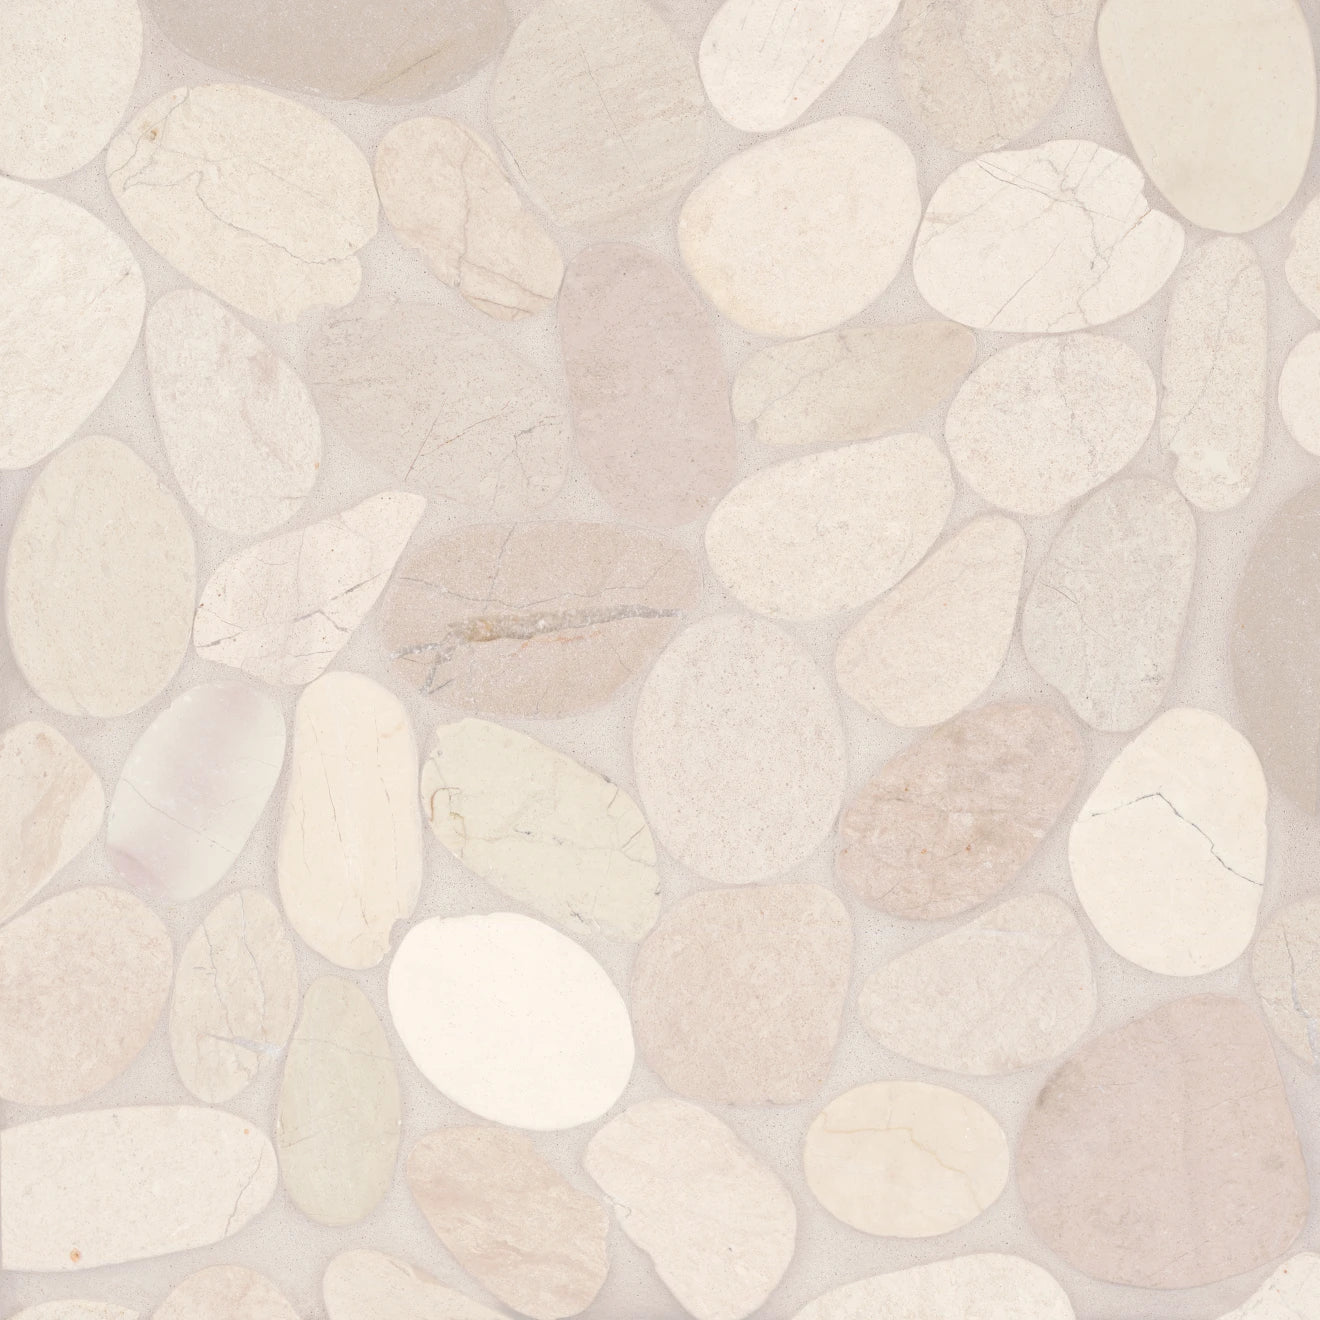 Waterbrook Jumbo Sliced Pebble Mosaic Tile